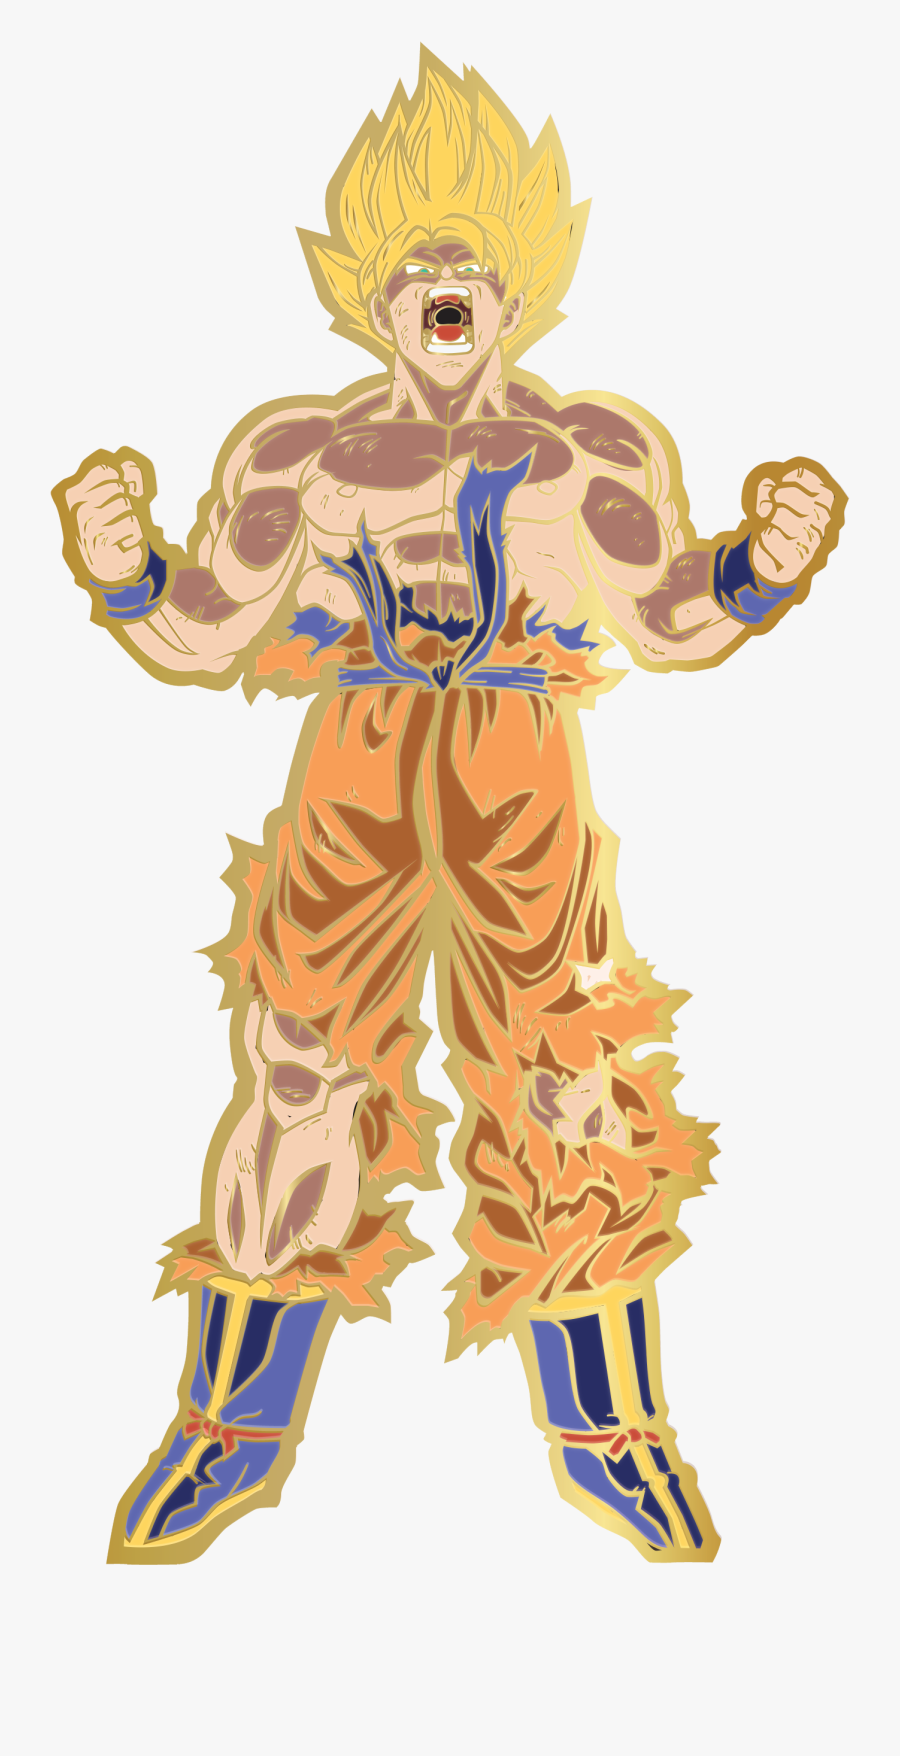 Ssj Goku Powering Up Transparent, Transparent Clipart